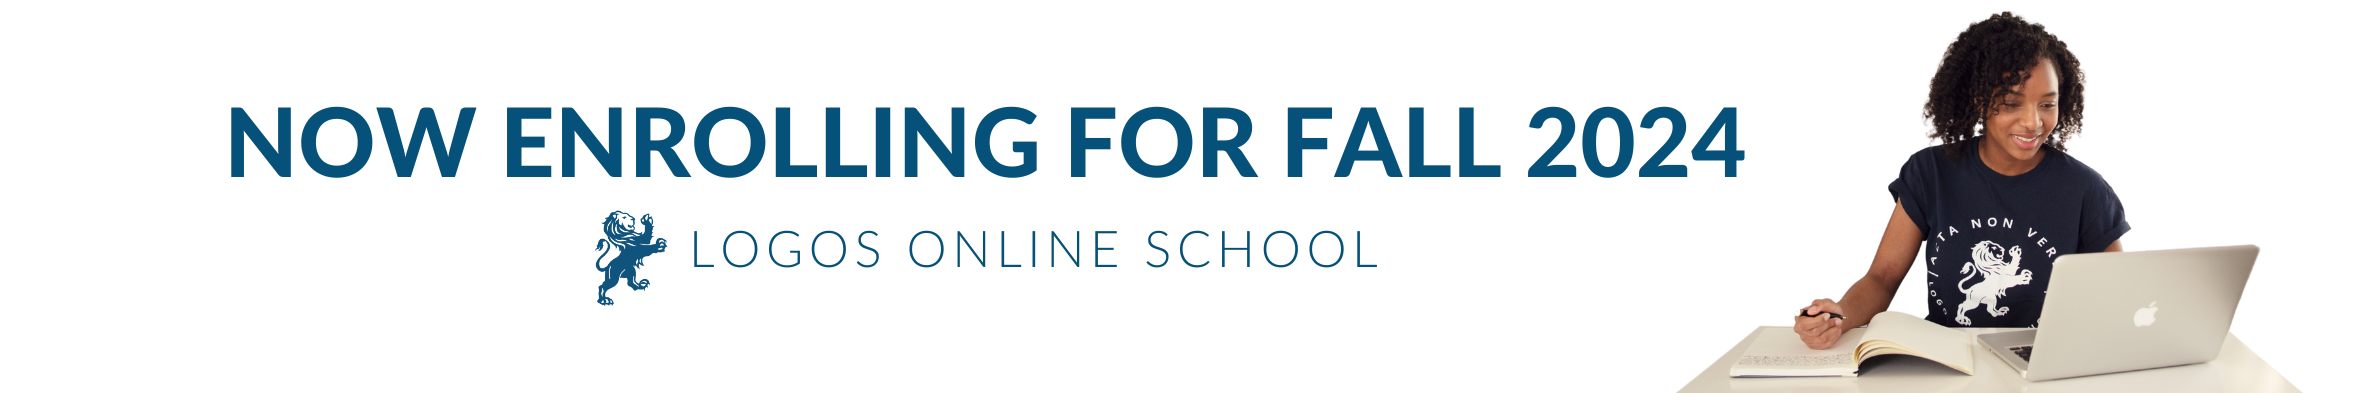 Logos Online School